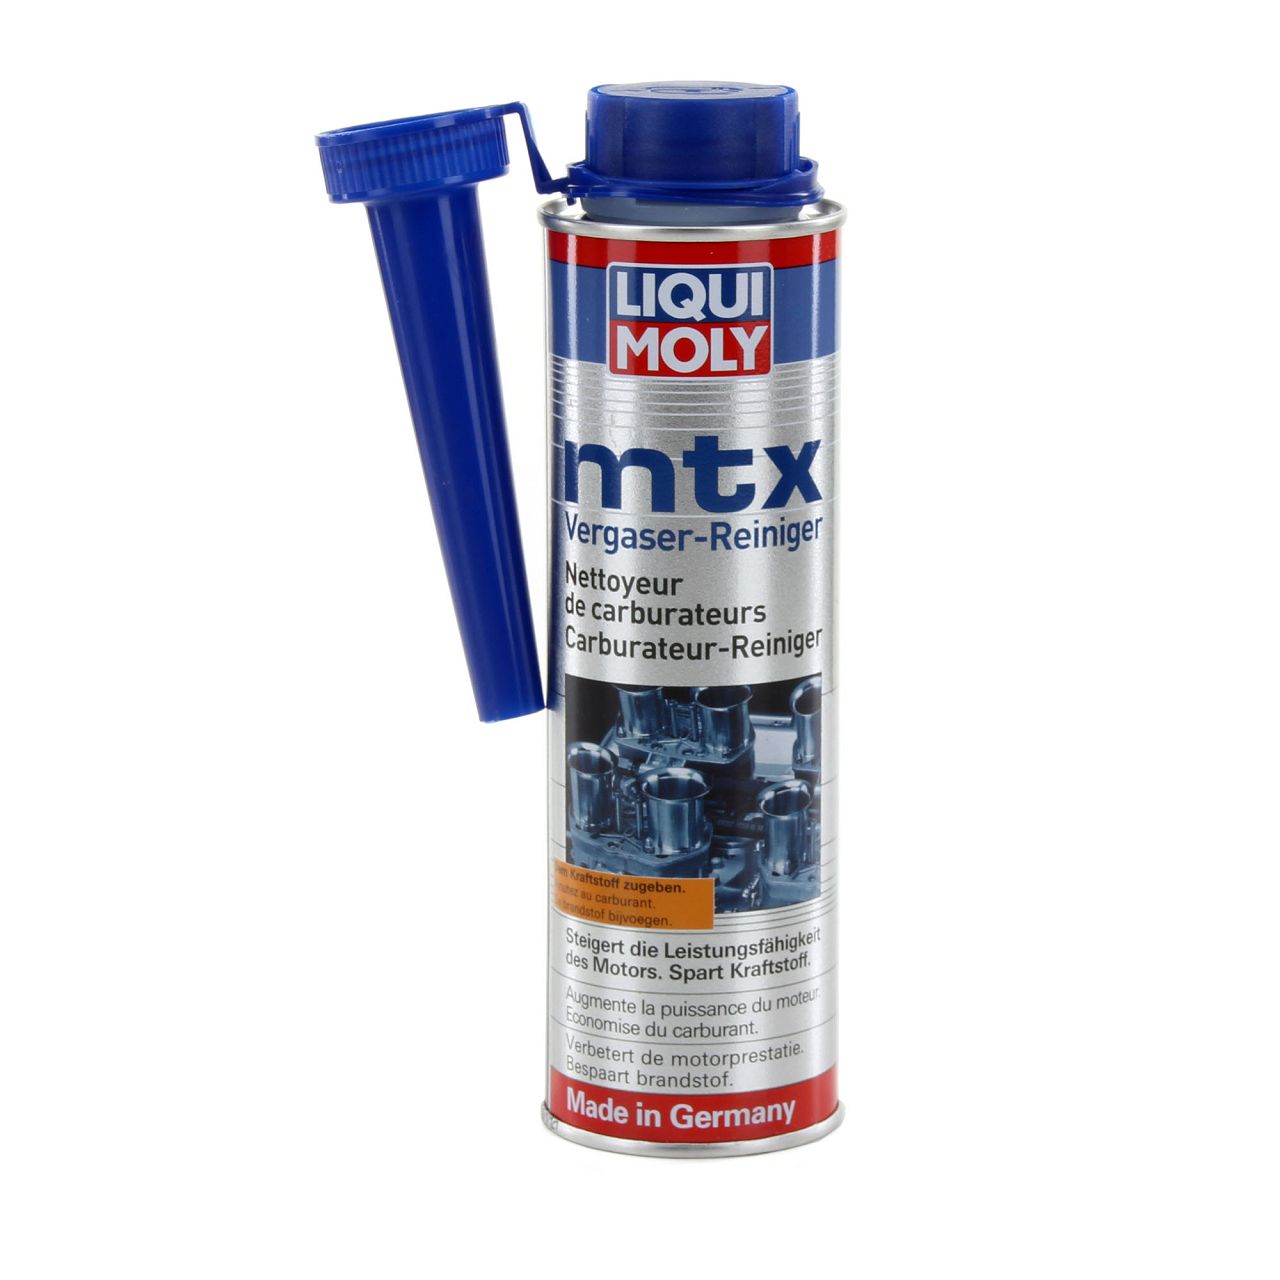 LIQUI MOLY Benzinadditiv MTX Vergaser-Reiniger Vergaserreiniger 300 ml 5100